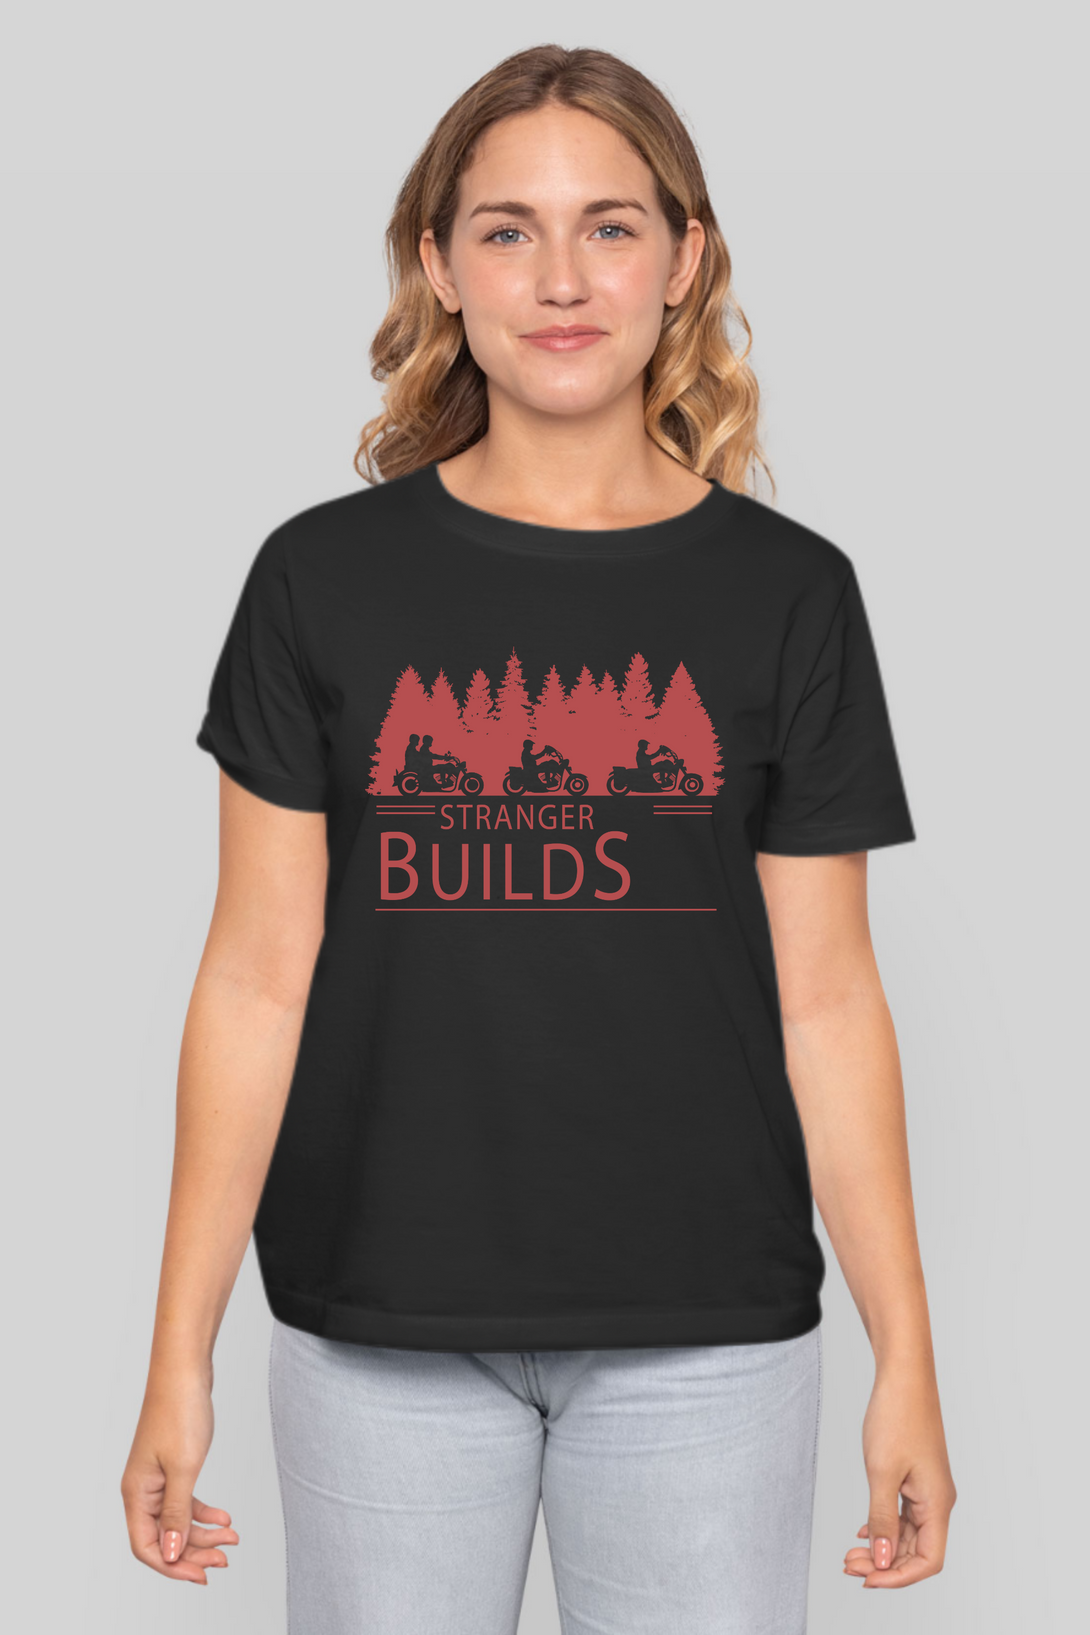 Stranger Builds Printed T-Shirt For Women - WowWaves - 8